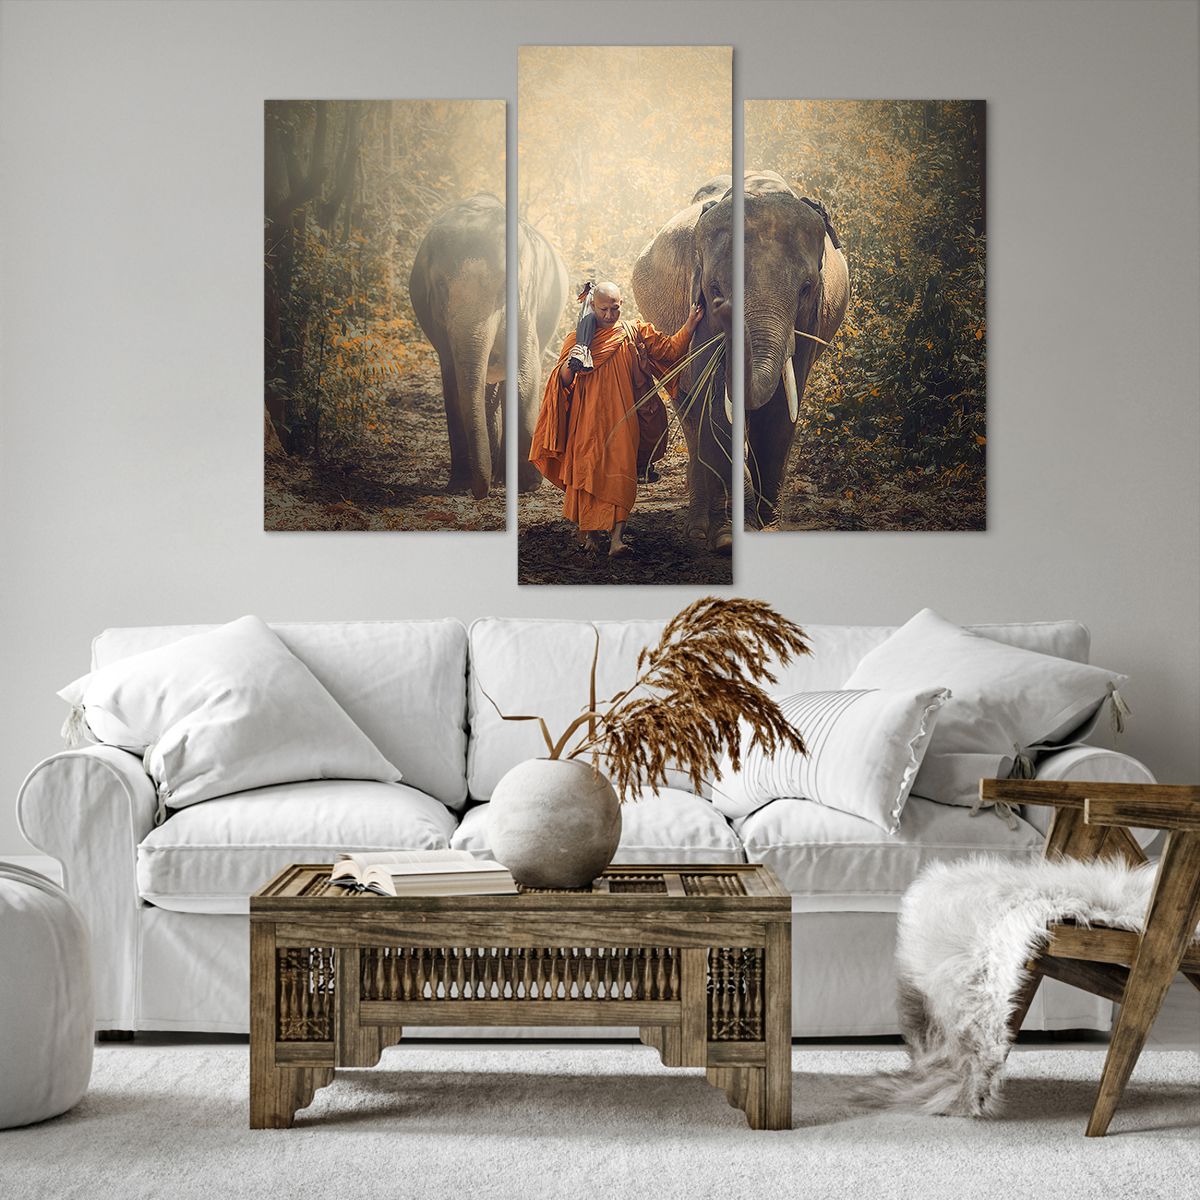 Bild auf Leinwand Asien, Bild auf Leinwand Elefant, Bild auf Leinwand Mönch, Bild auf Leinwand Urwald, Bild auf Leinwand Buddhismus